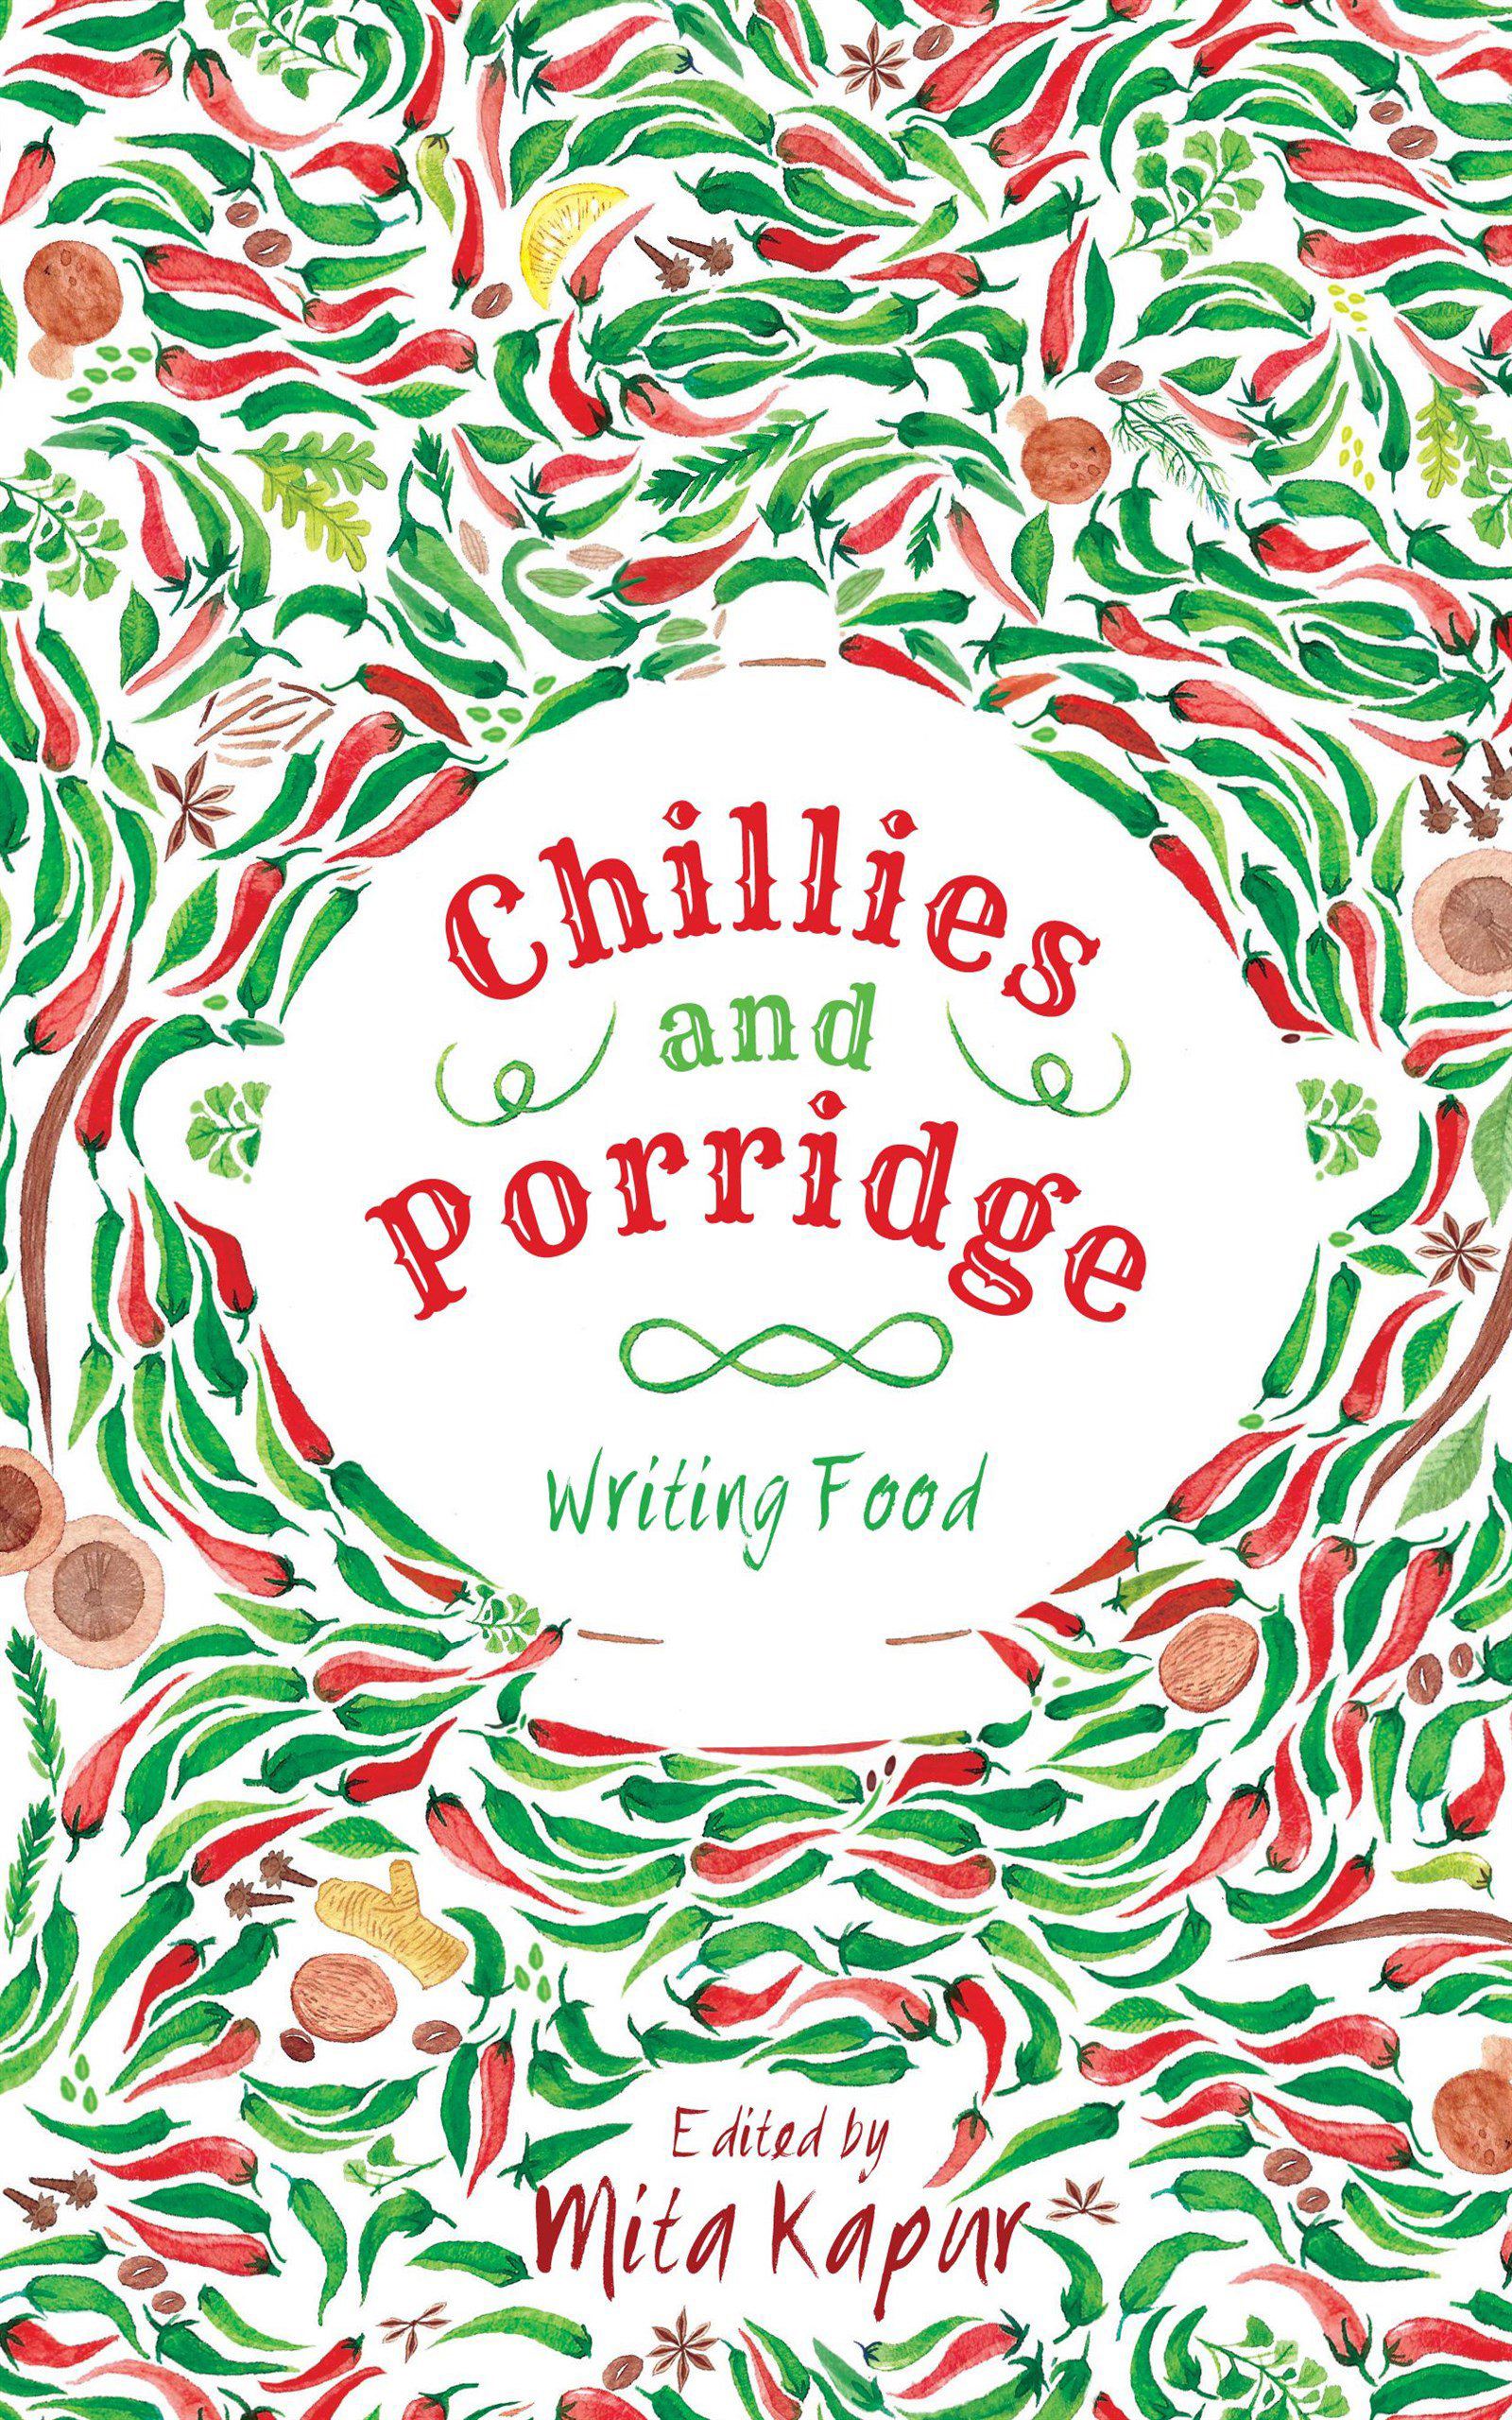 Chillies and porridge